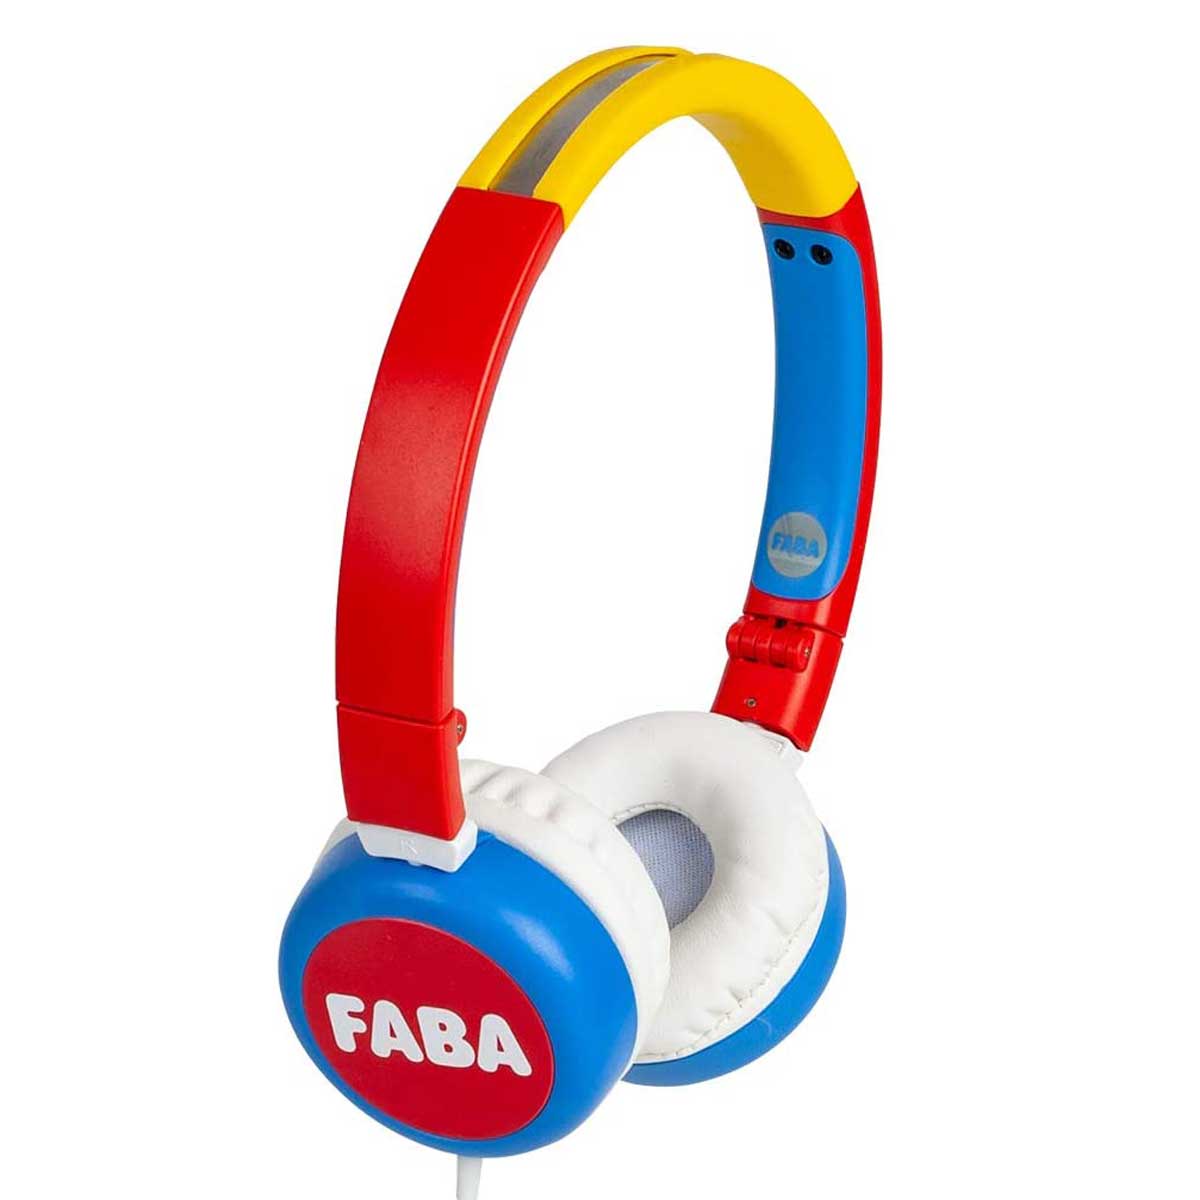 FABA Cuffie Audio Colorate per Bambini 2 | FABA Raccontastorie